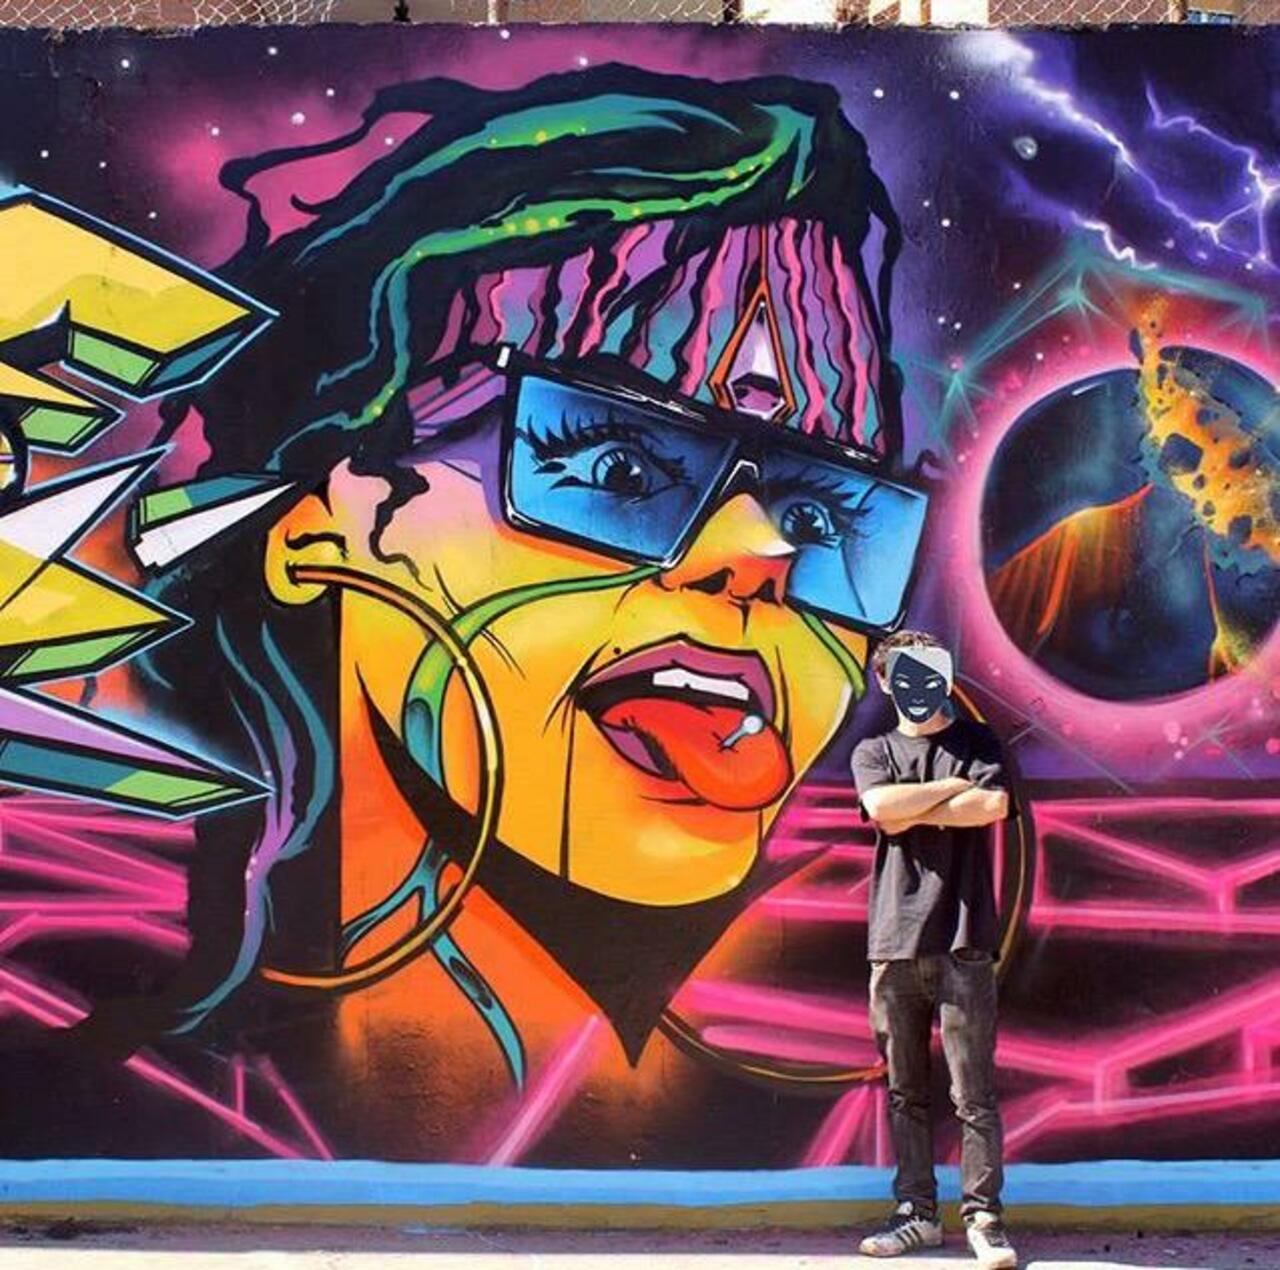 Brilliant new Street Art by the artist Jaycaes

#art #graffiti #mural #streetart http://t.co/F2xEZsJdN3